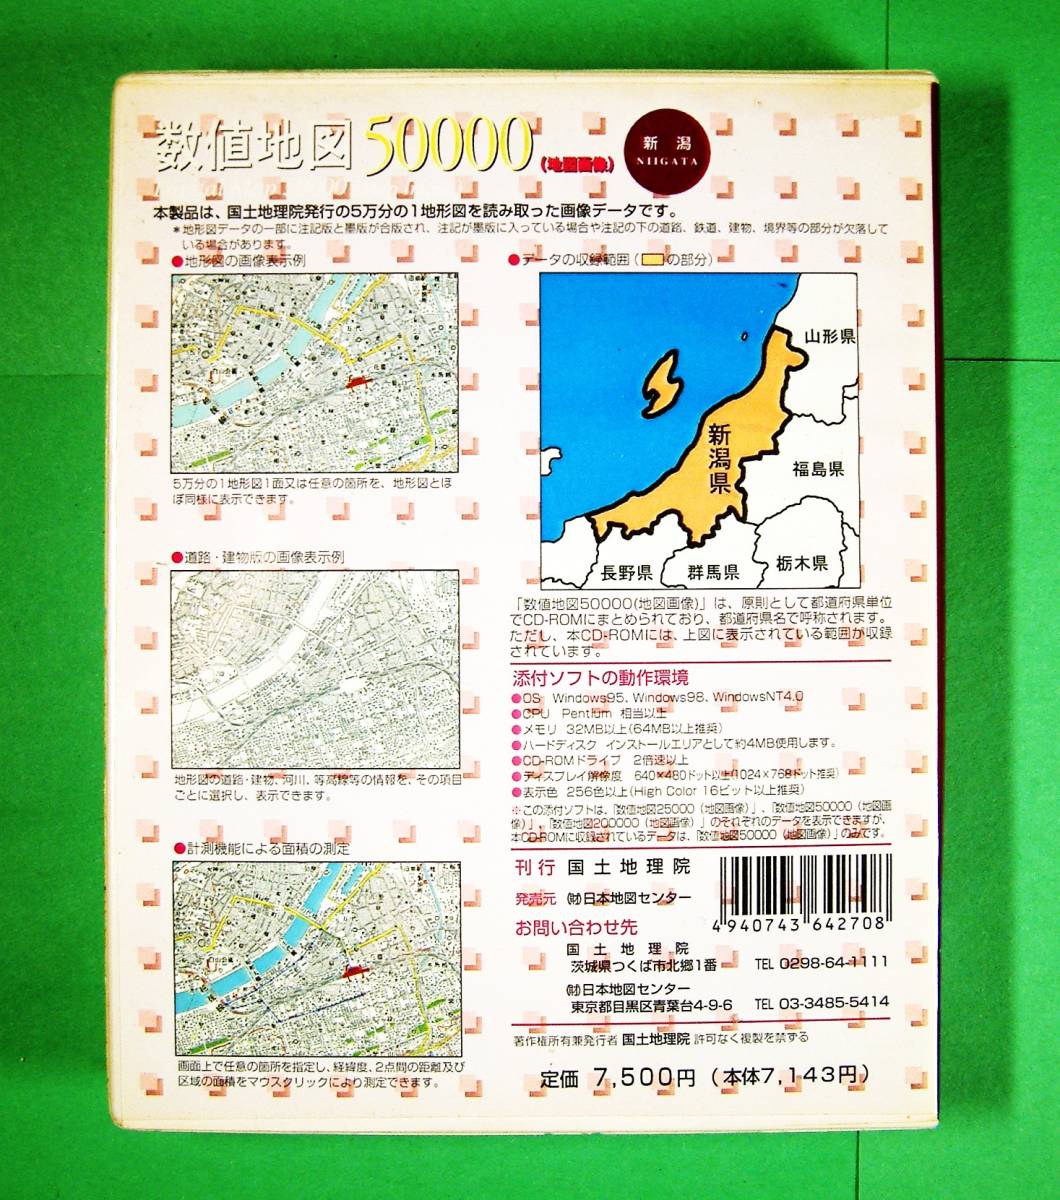 【3967】国土地理院 数値地図50000(地図画像) 新潟 CD-ROM 2001(平成13年)発行 NIIGATA 日本地図センター Digital Map 新潟県 マップ 地図_画像2